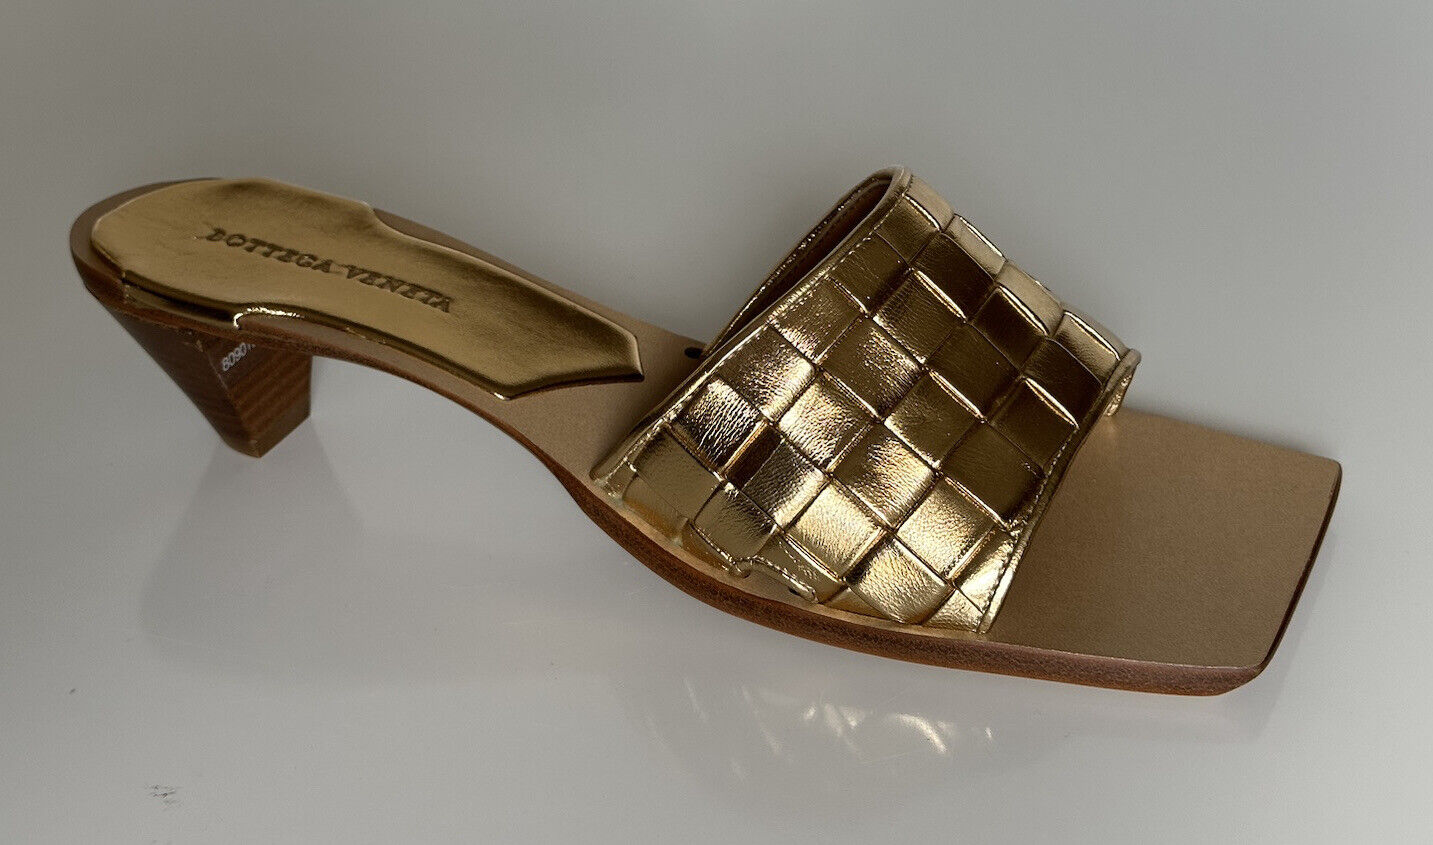 NIB $ 720 Bottega Damen-Sandalen aus Leder mit goldfarbenem Pfirsich-Absatz 11 US 578373 IT 